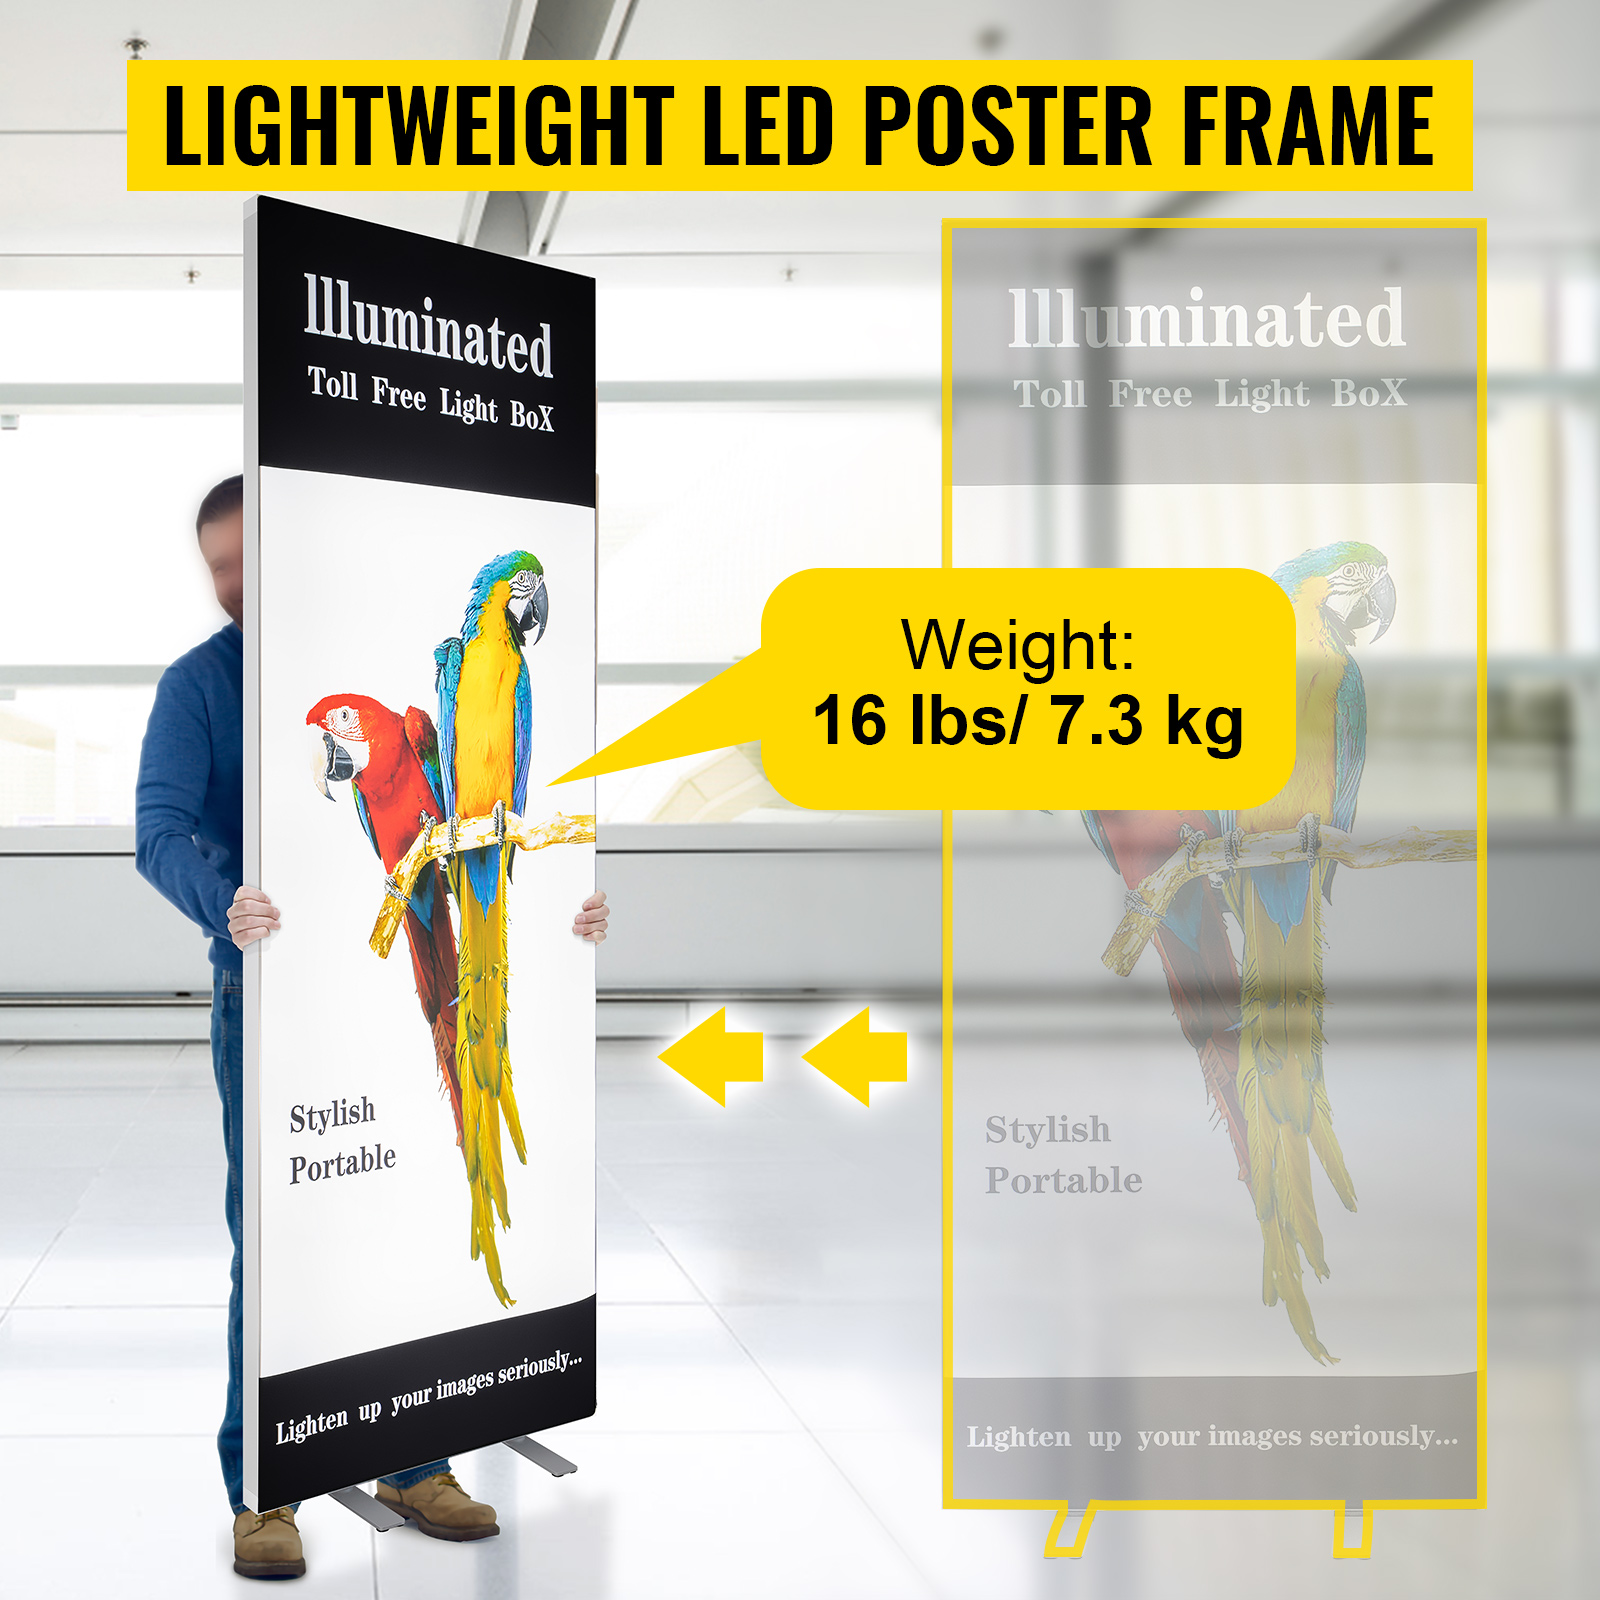 Світлодіодна рамка для плакатів VEVOR 86,4 x 203,2 см, великий пішохідний знак, світлодіодний лайтбокс з алюмінієвою рамою та стійкою основою, фоторамка для плакатної реклами з підсвічуванням